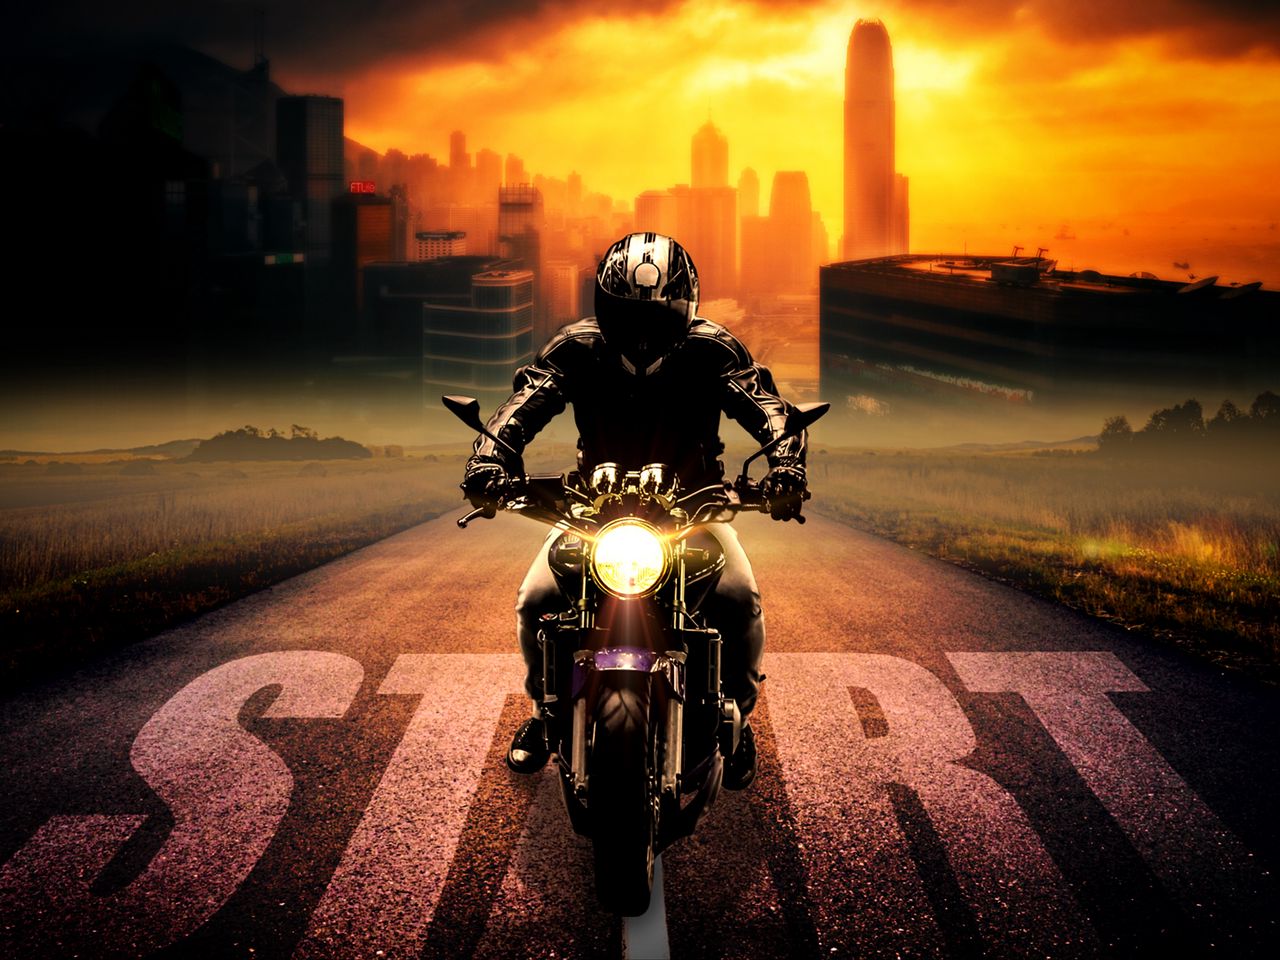 Download wallpaper 1280x960 biker, bike, motorcycle, motorcyclist ...